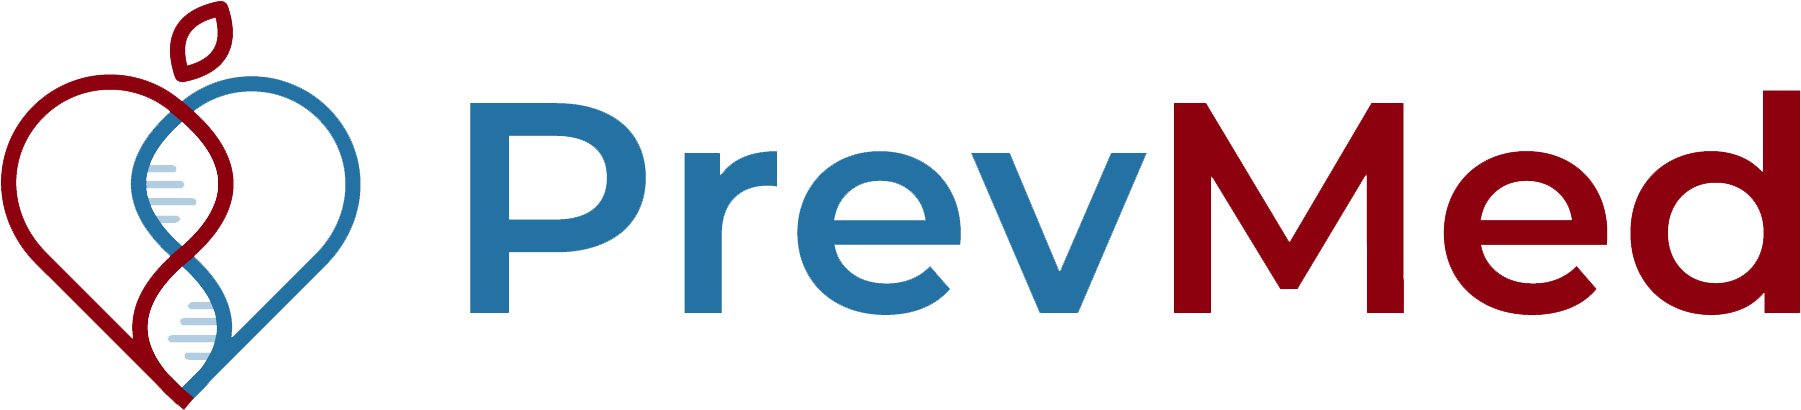 PrevMed-new-logo 2